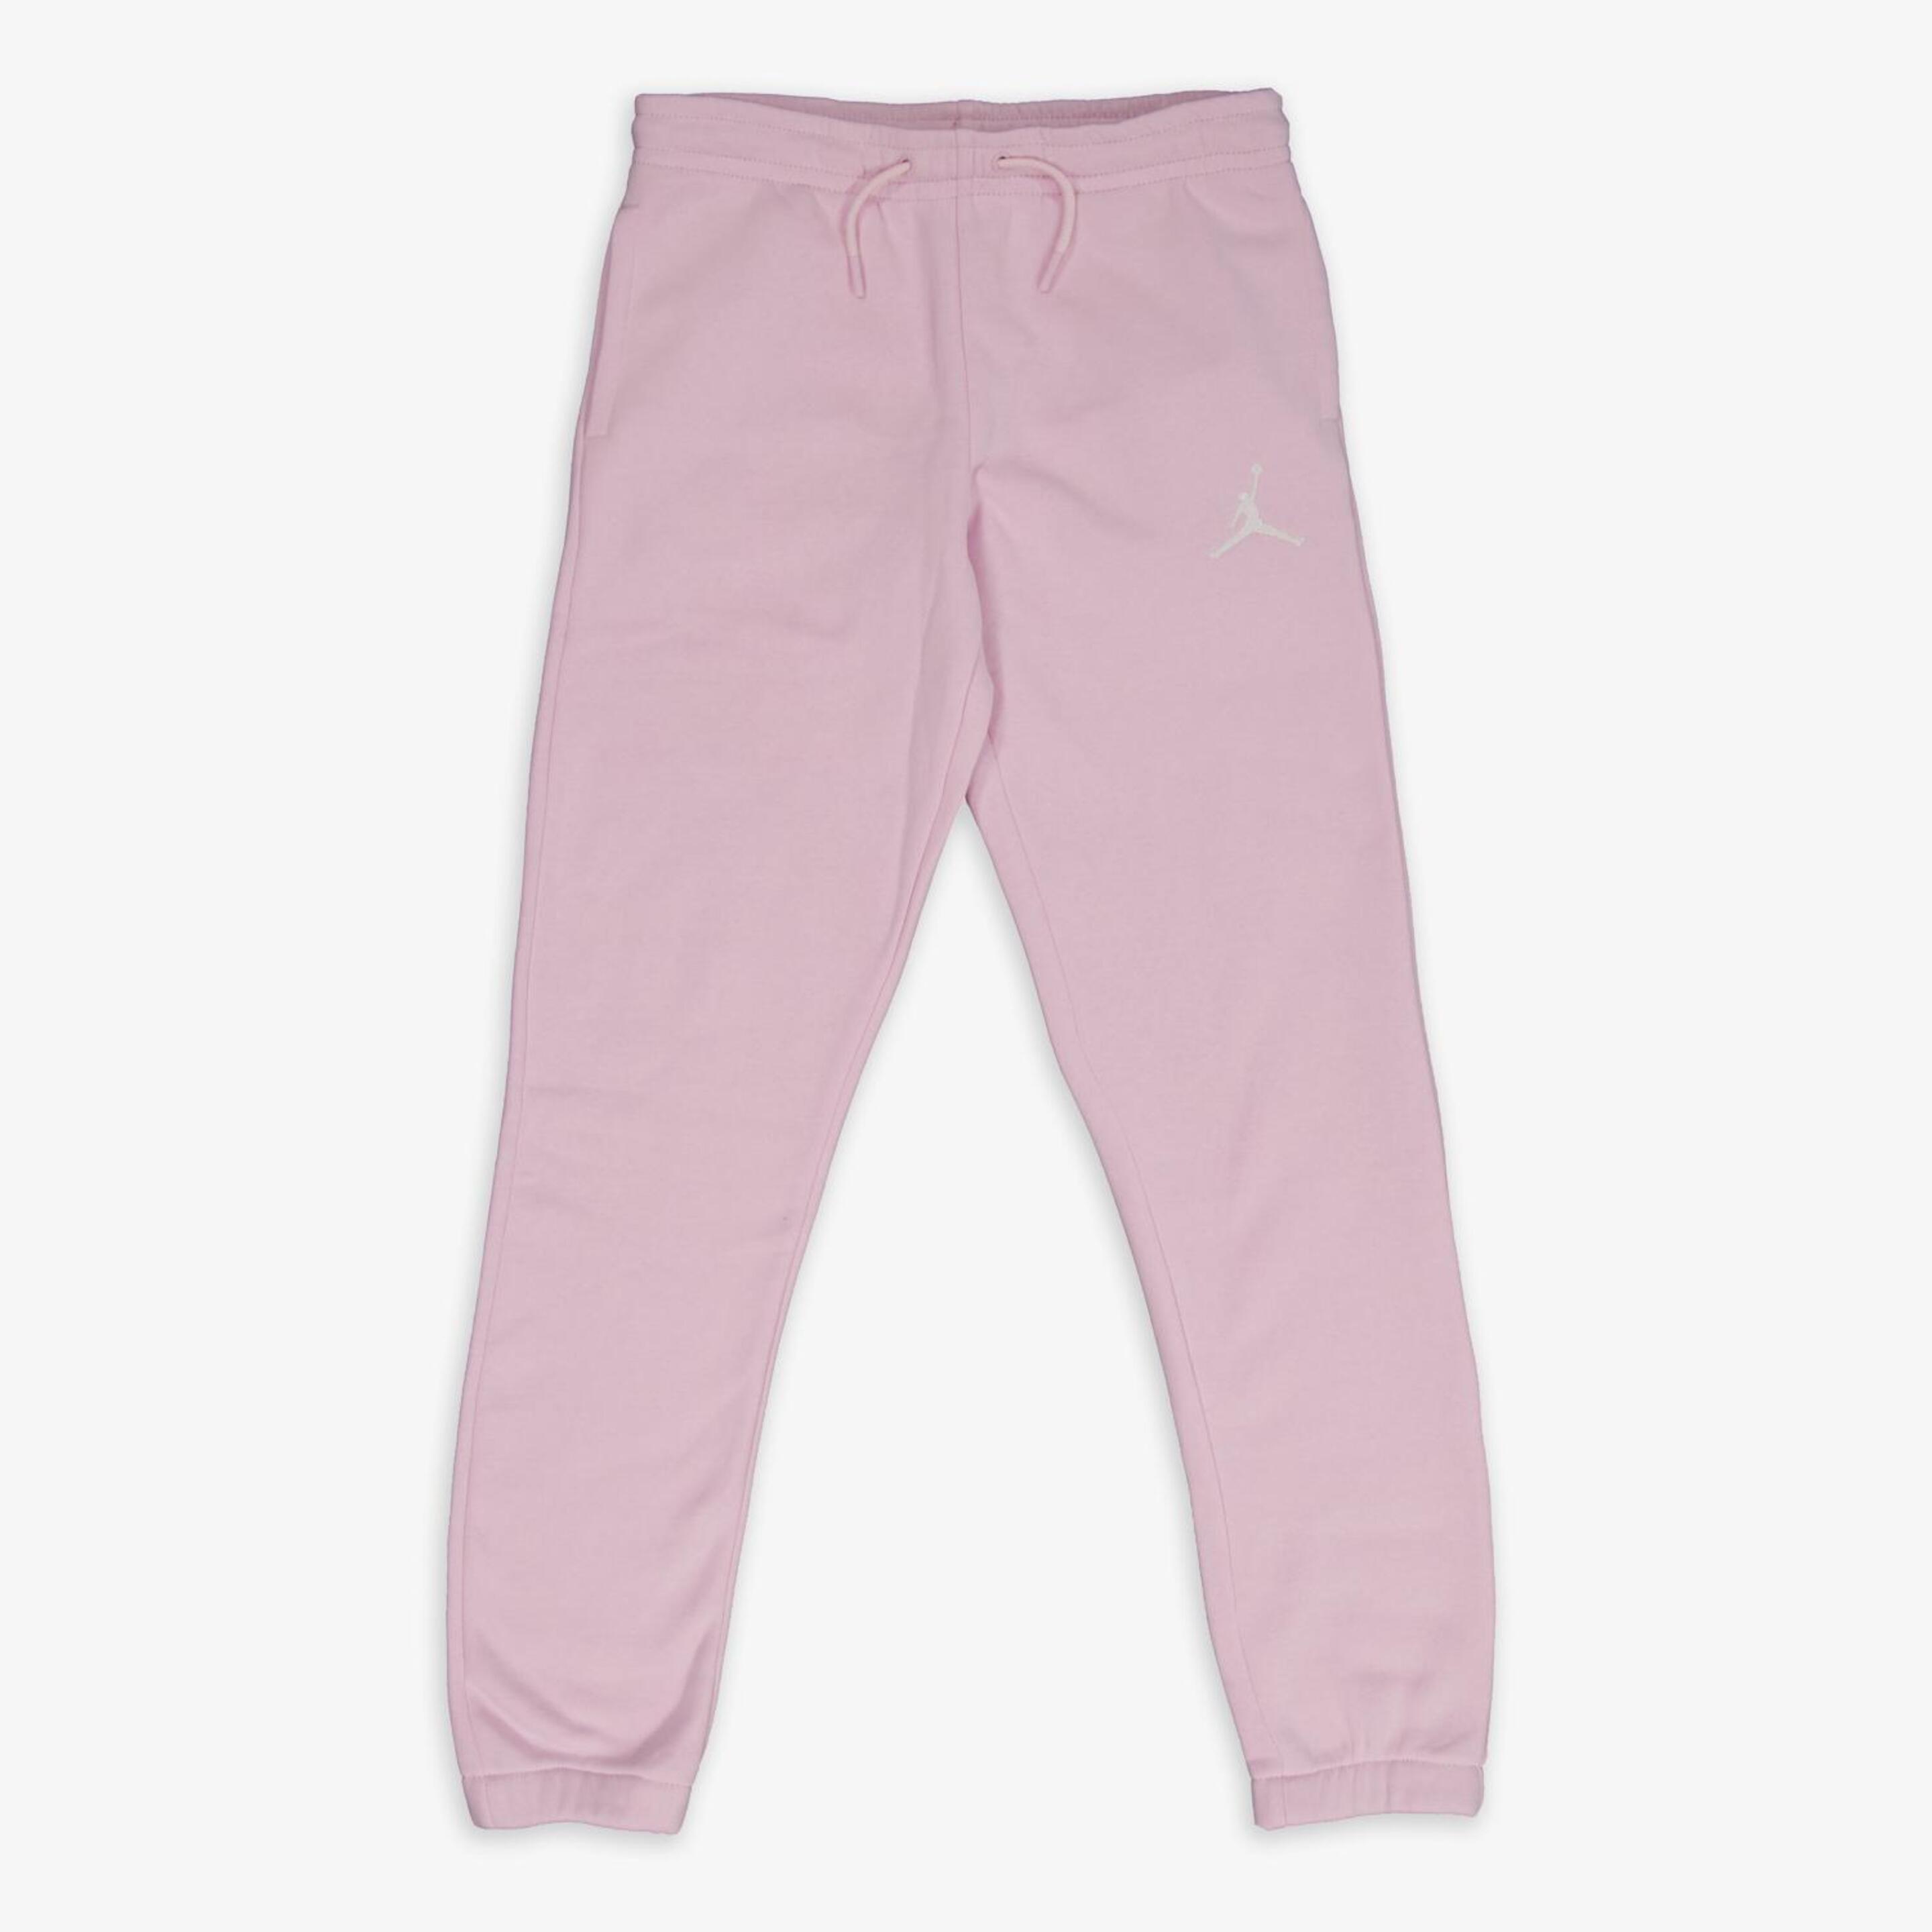 Calças Jordan - rosa - Calças Fato Treino Rapariga